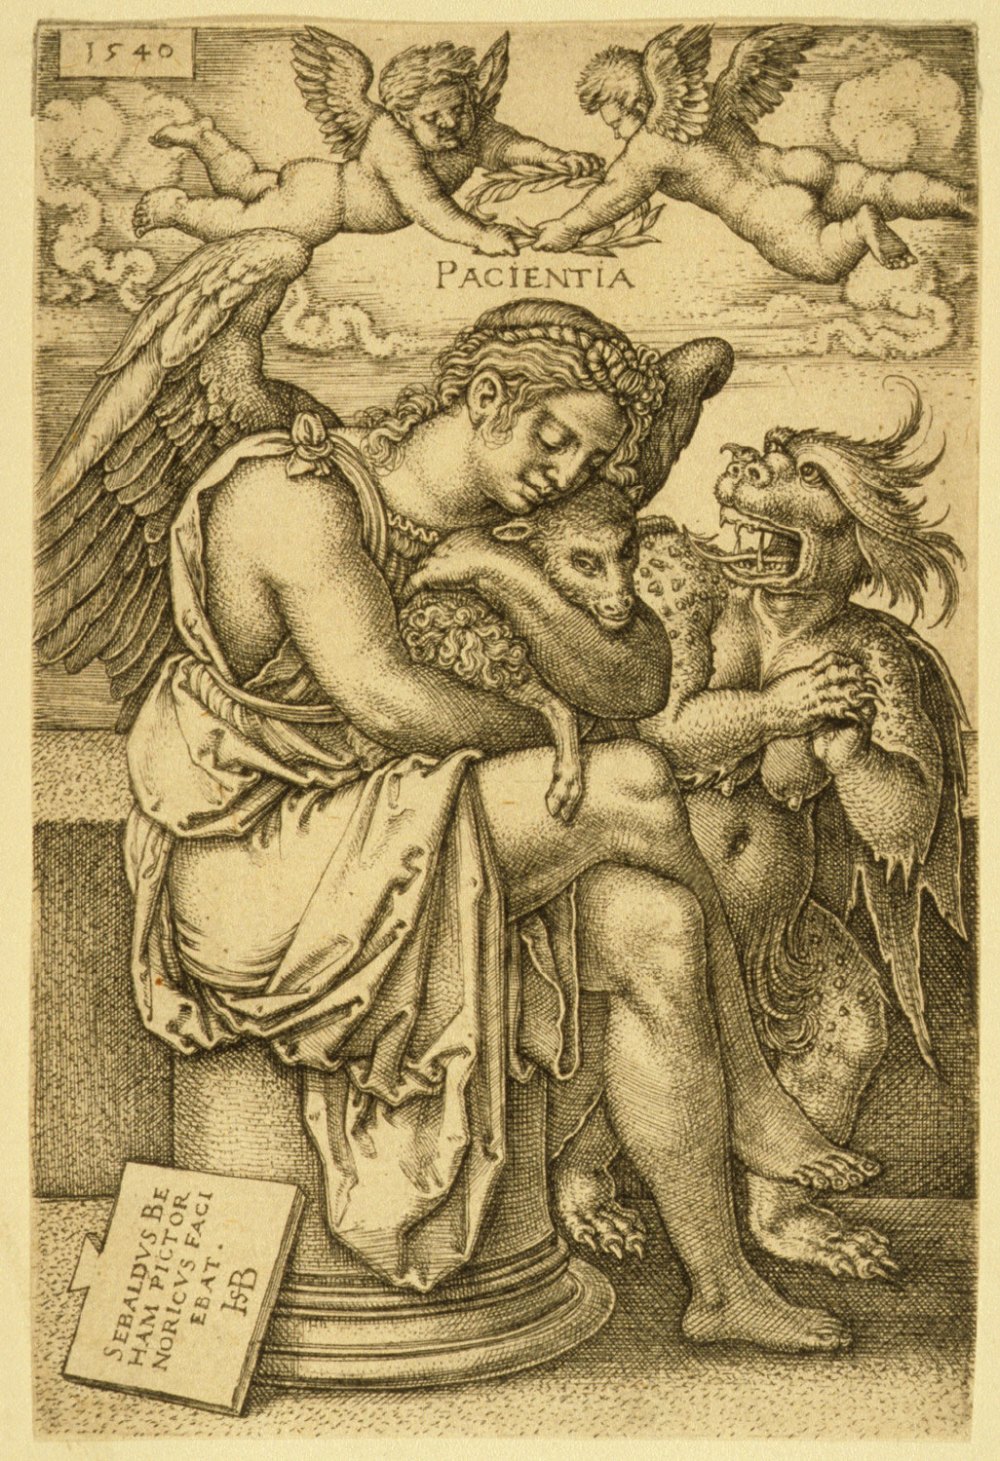 Hans Sebald Beham -Pacientia 1540